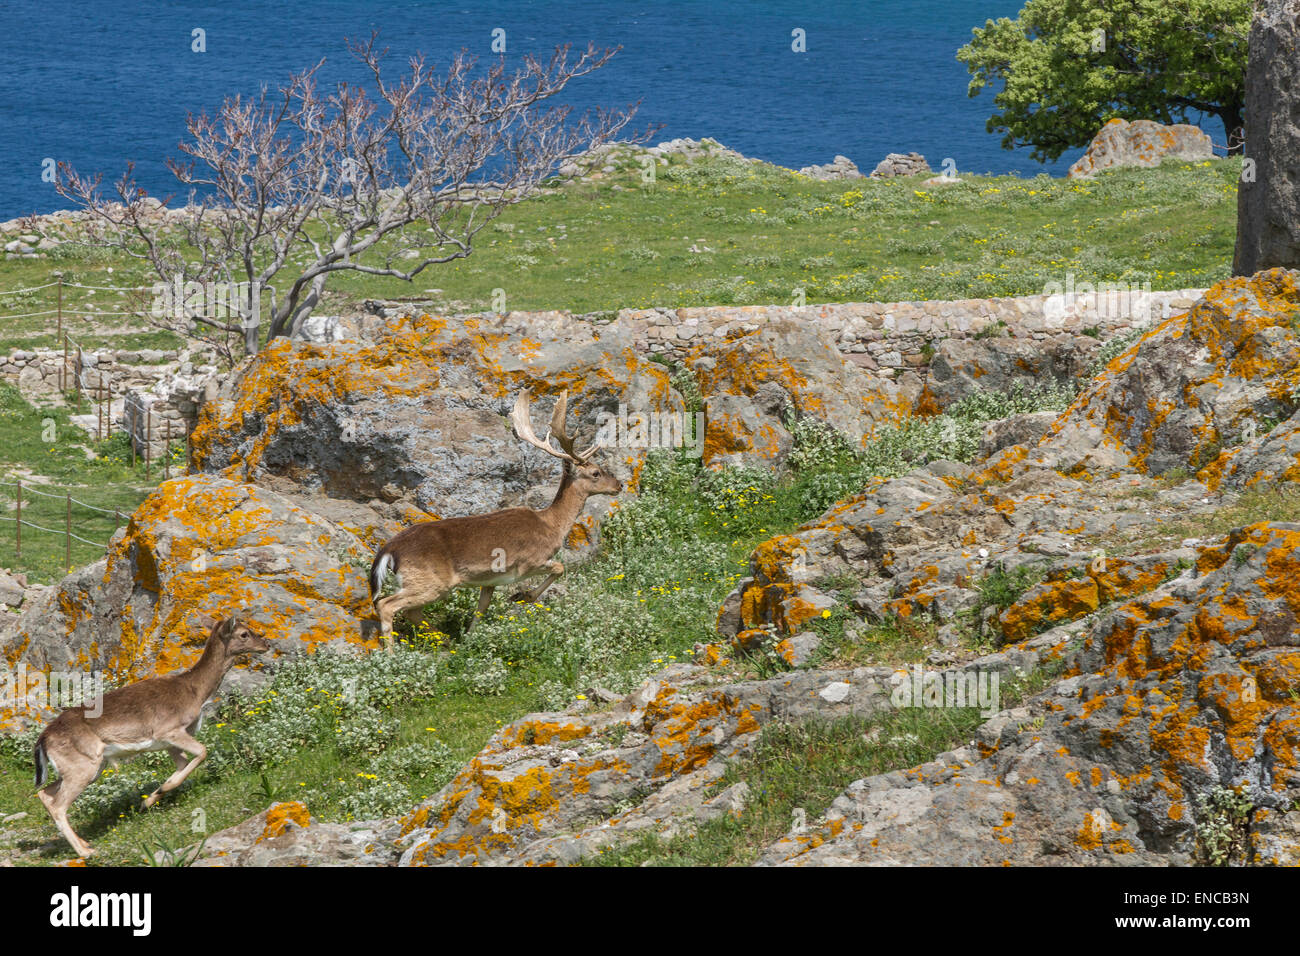 Cerfs vivant dans le château de Myrina, dans l'île de Lemnos, Mer Égée, Grèce. Banque D'Images